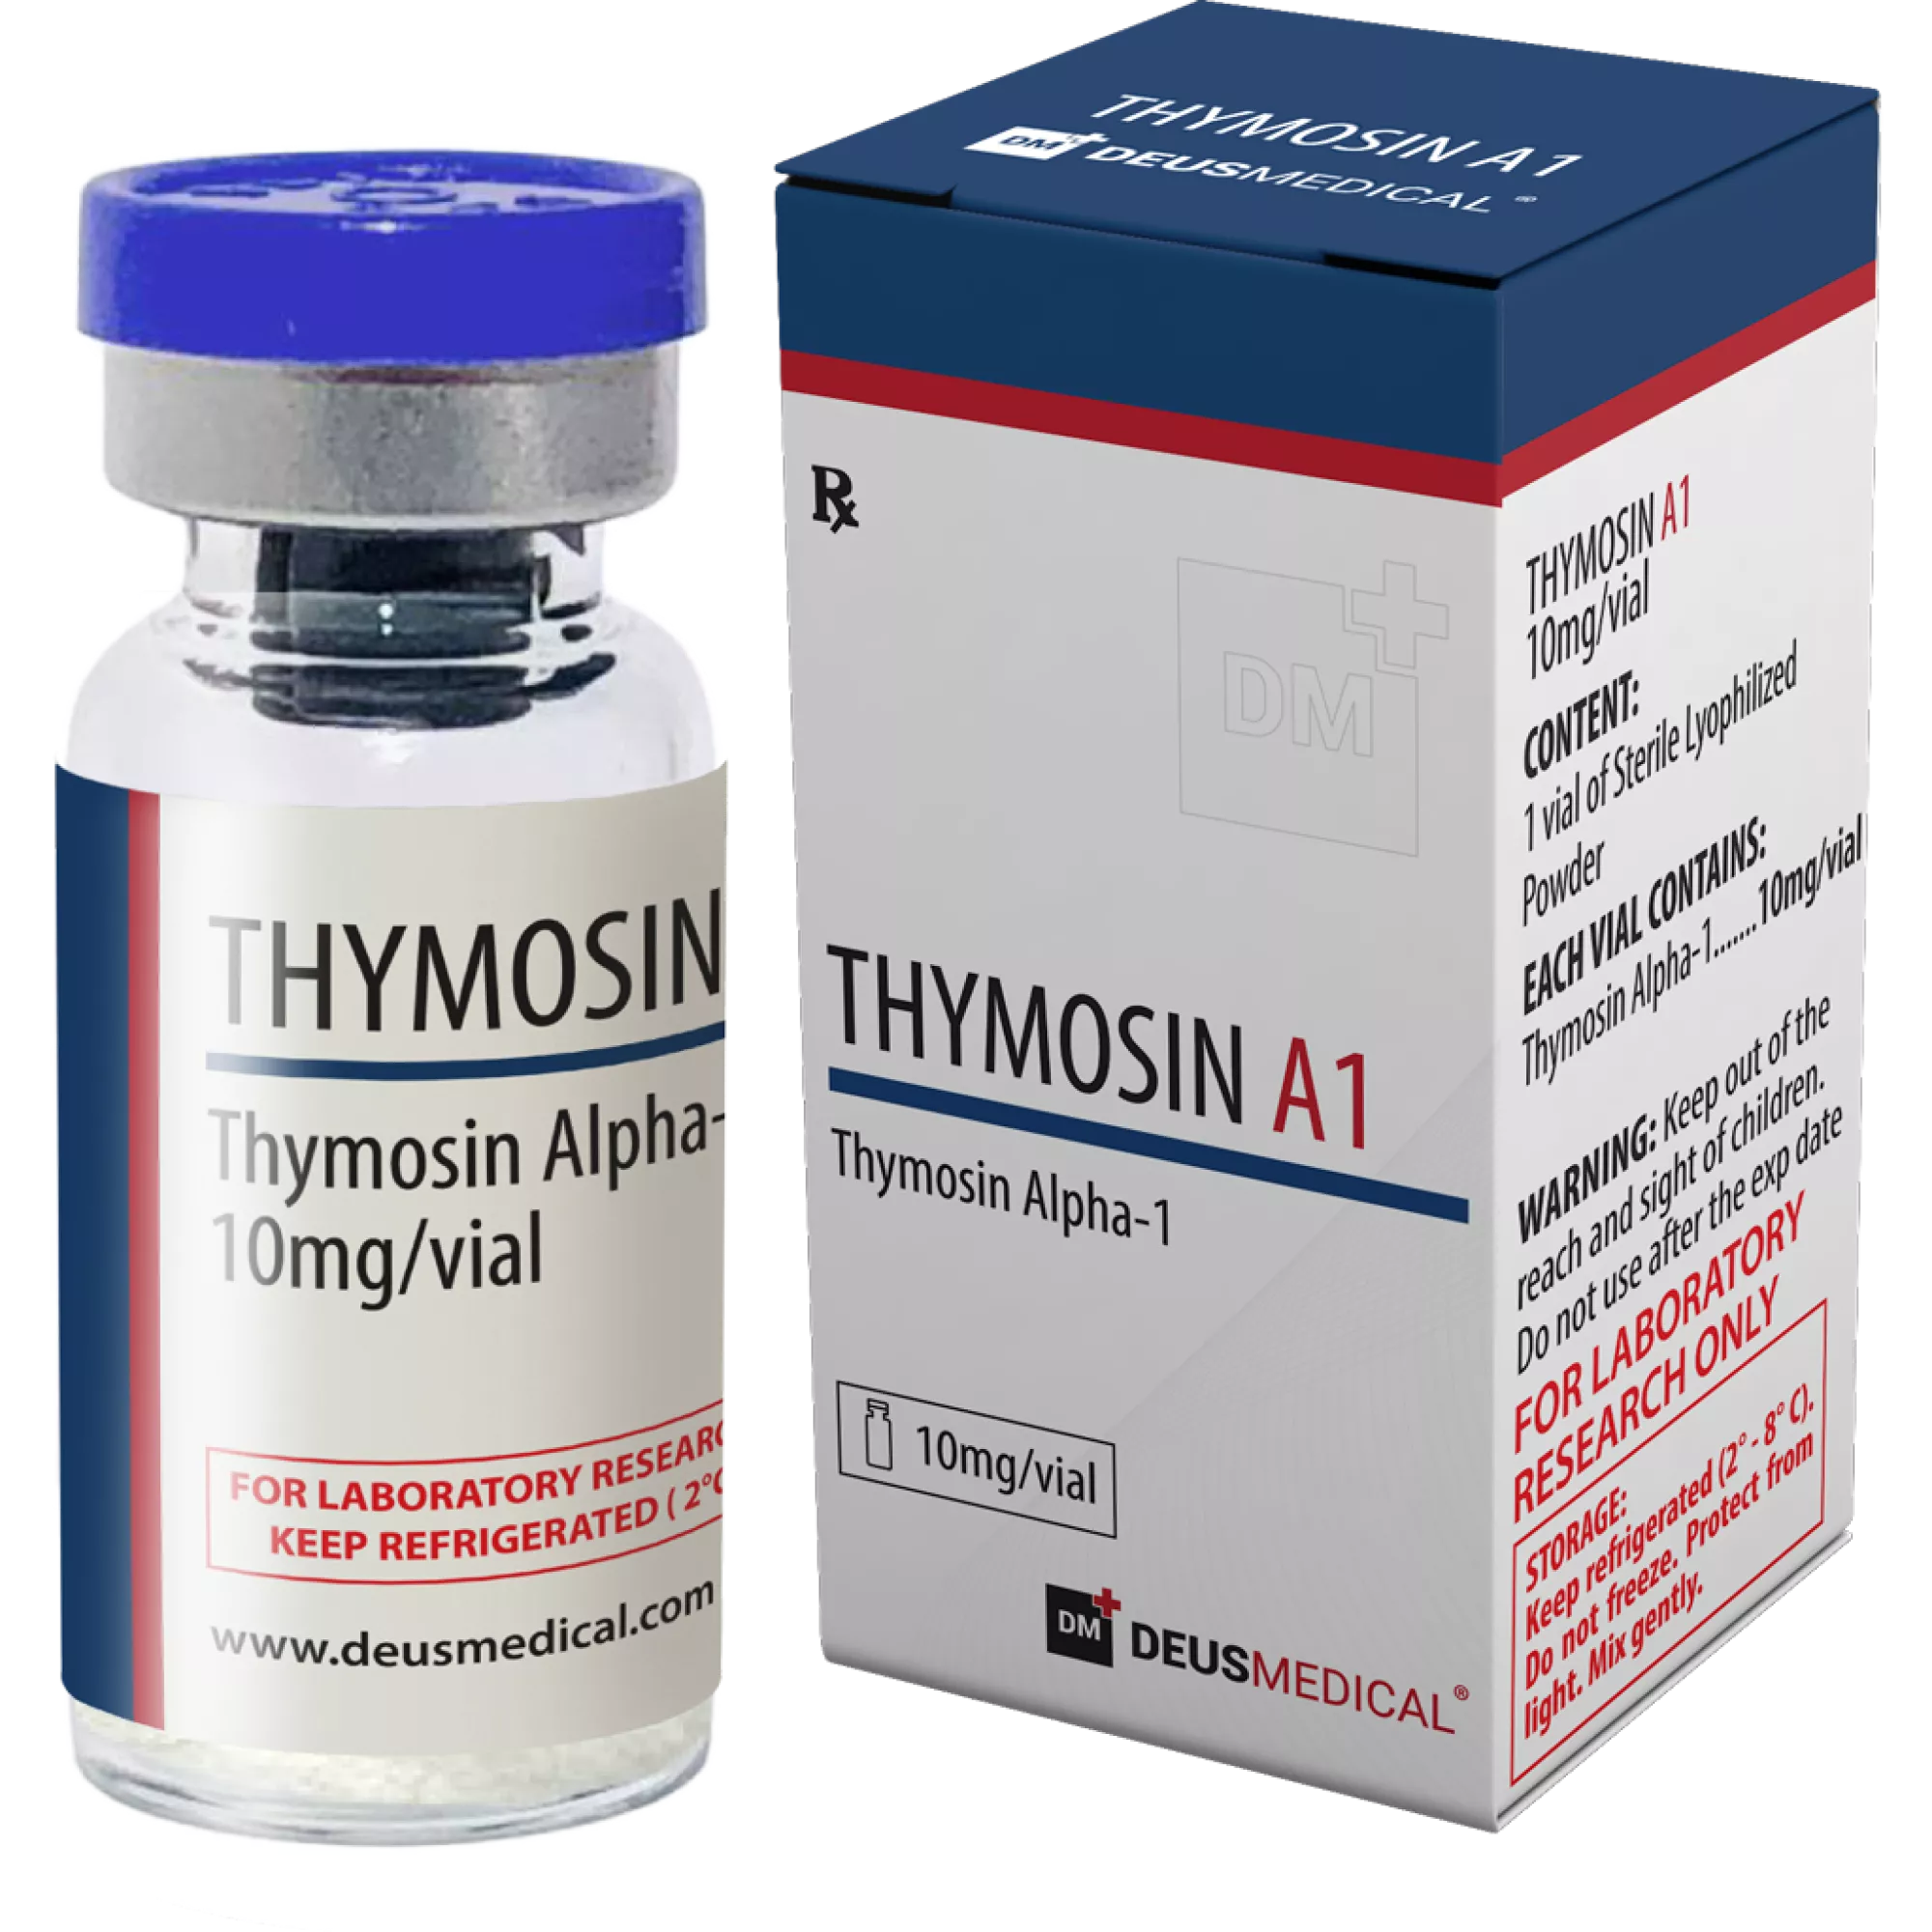 THYMOSIN Α1 (Thymosin Alpha-1), Deus Medical, köp steroider online - www.deuspower.shop